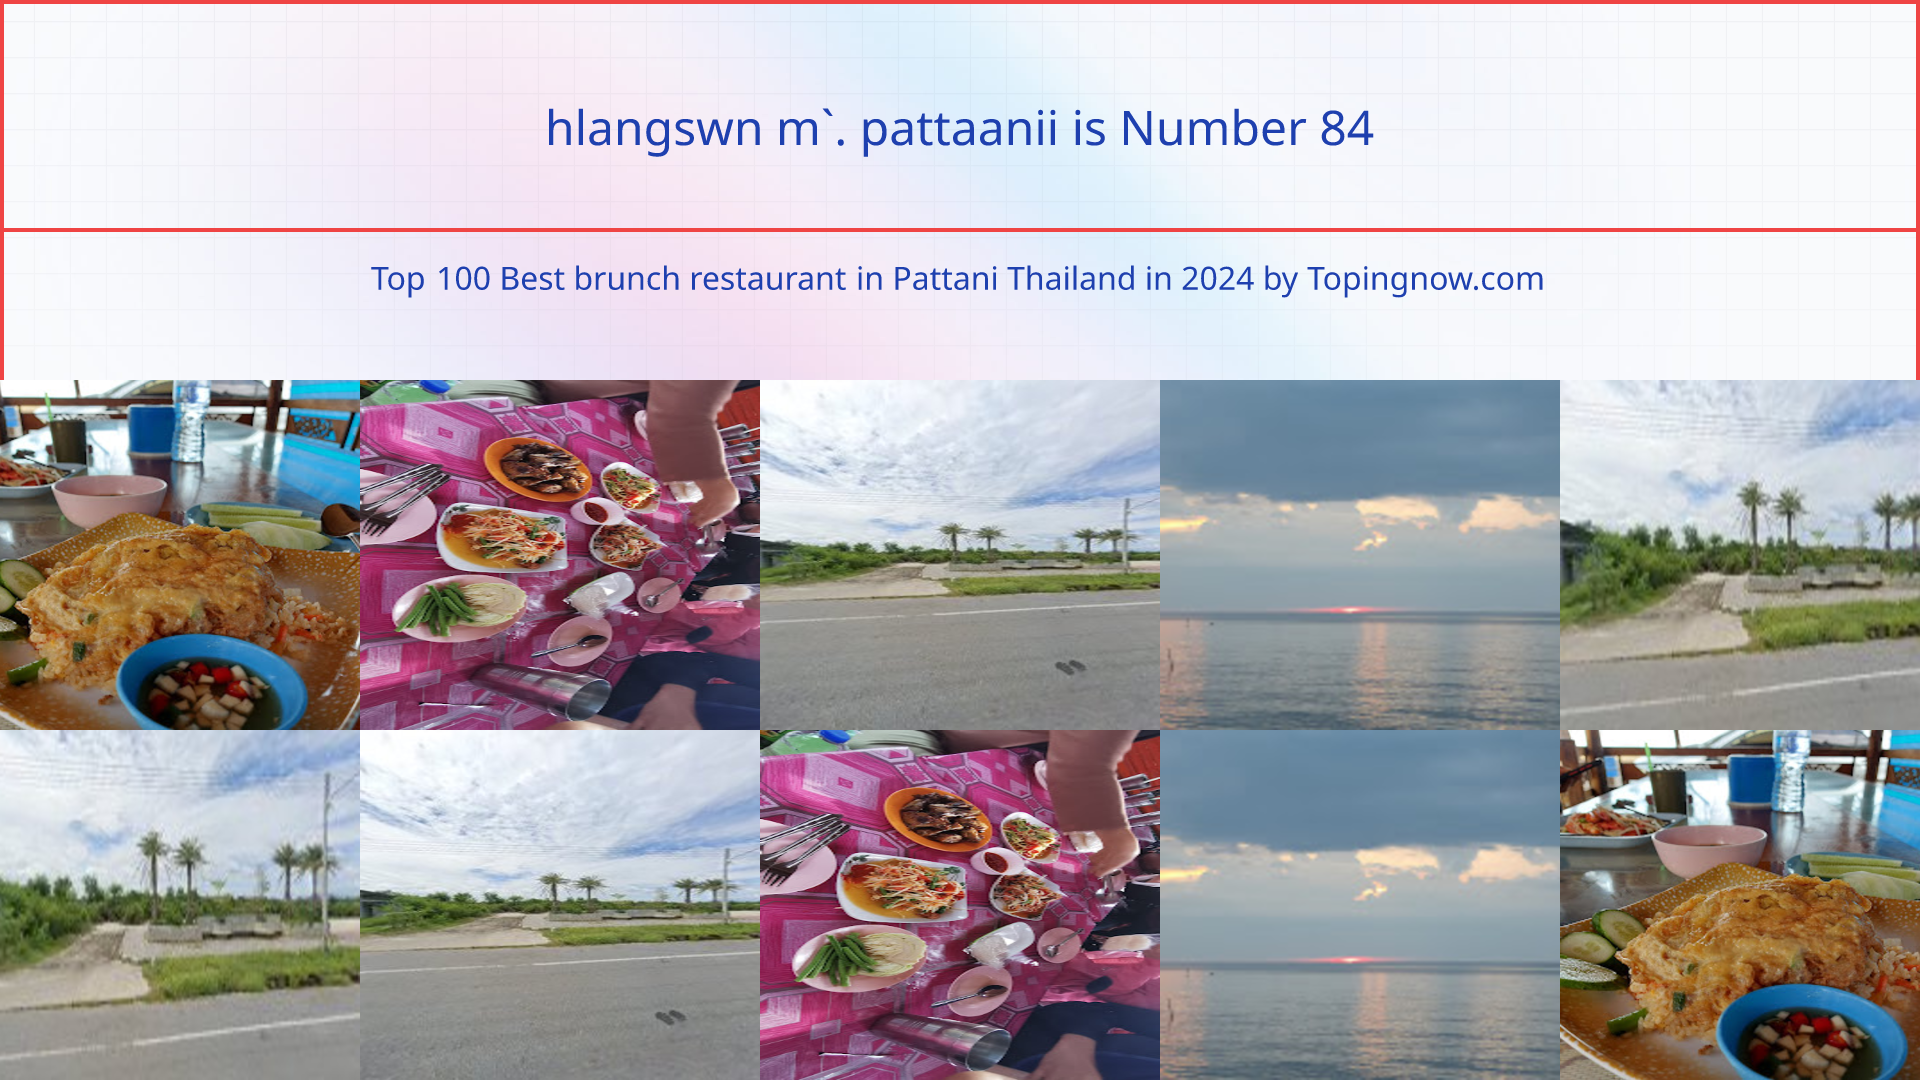 hlangswn m`. pattaanii: Top 100 Best brunch restaurant in Pattani Thailand in 2024